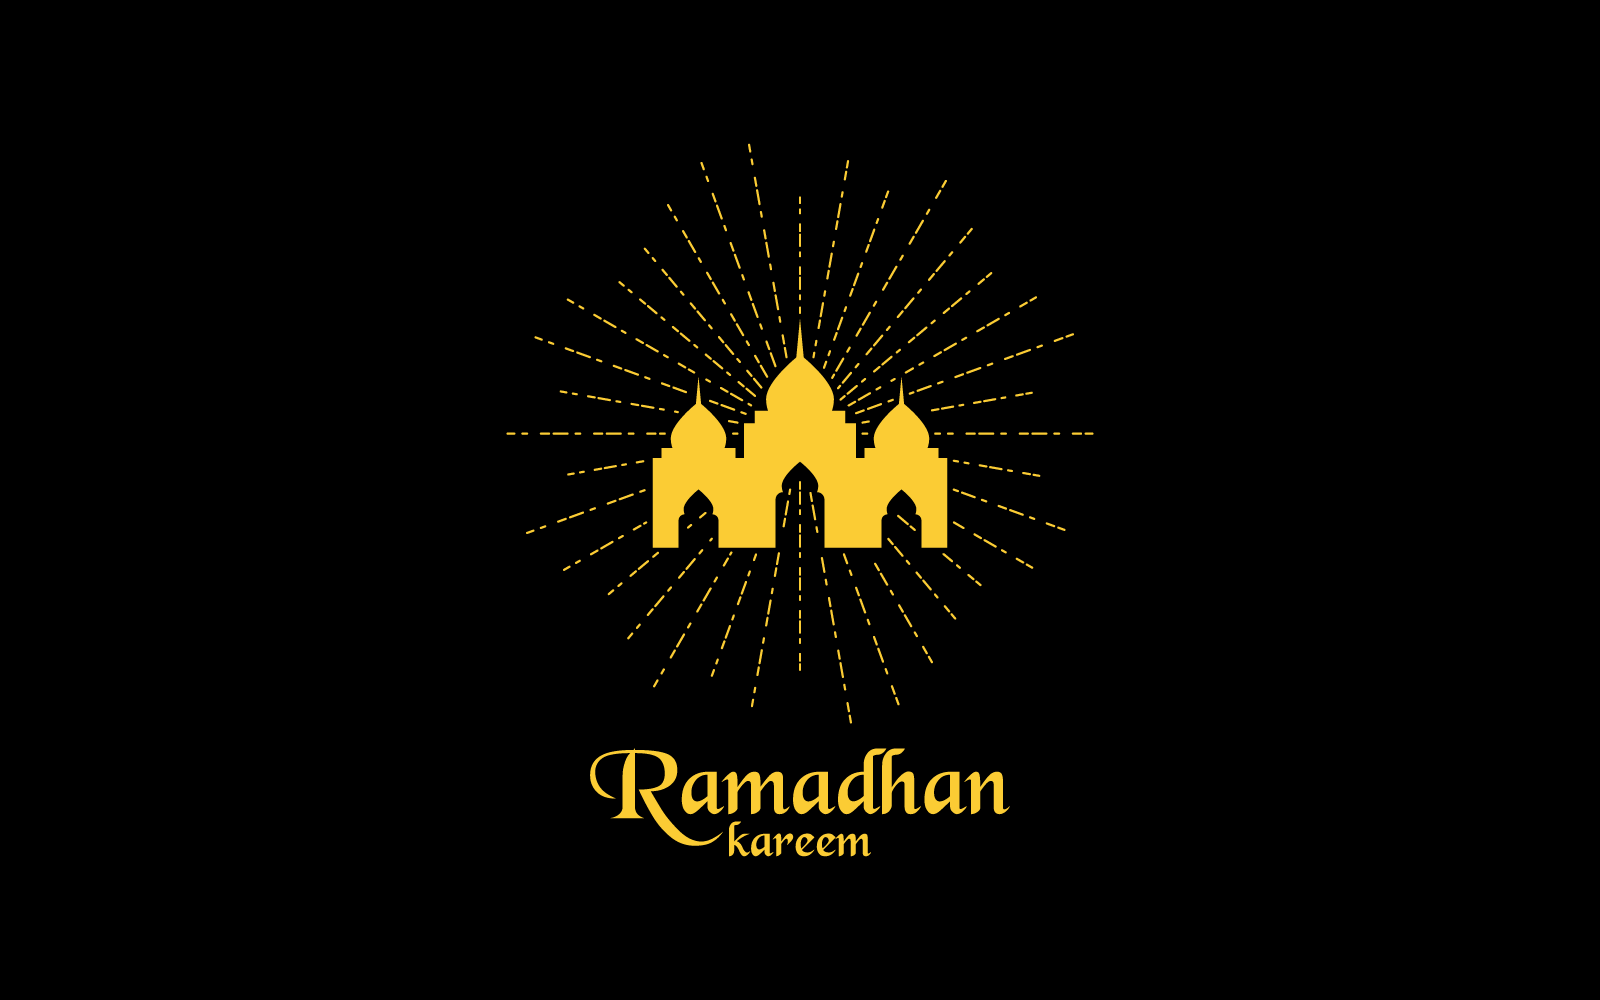 Islamski, meczet, szablon ilustracji logo ramadhan kareem